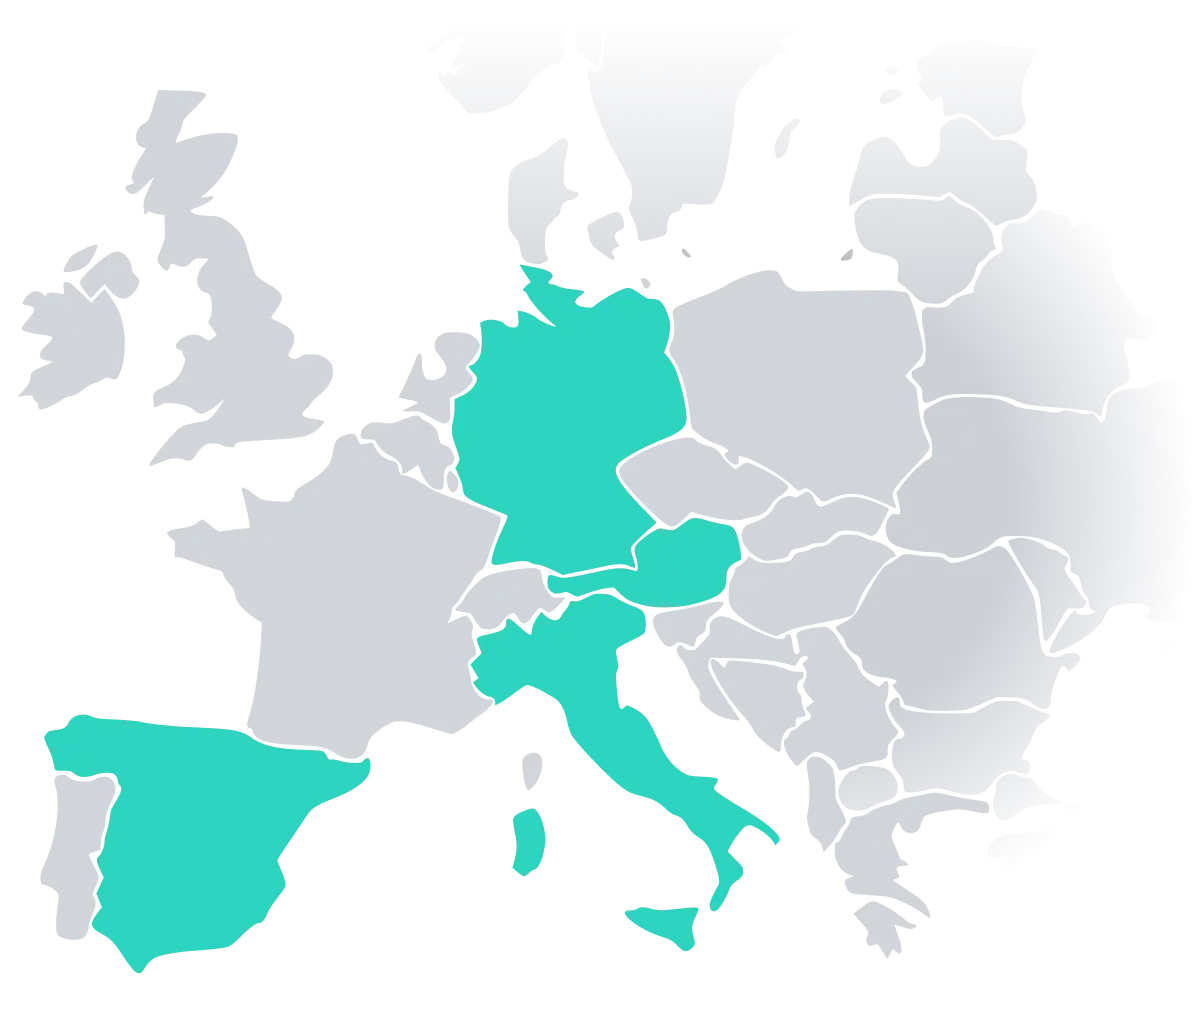 Mappa dell'Europa sulla quale Austria, Germania, Spagna e Italia sono contrassegnate in verde perché dotate di conformità POS grazie a fiskaly